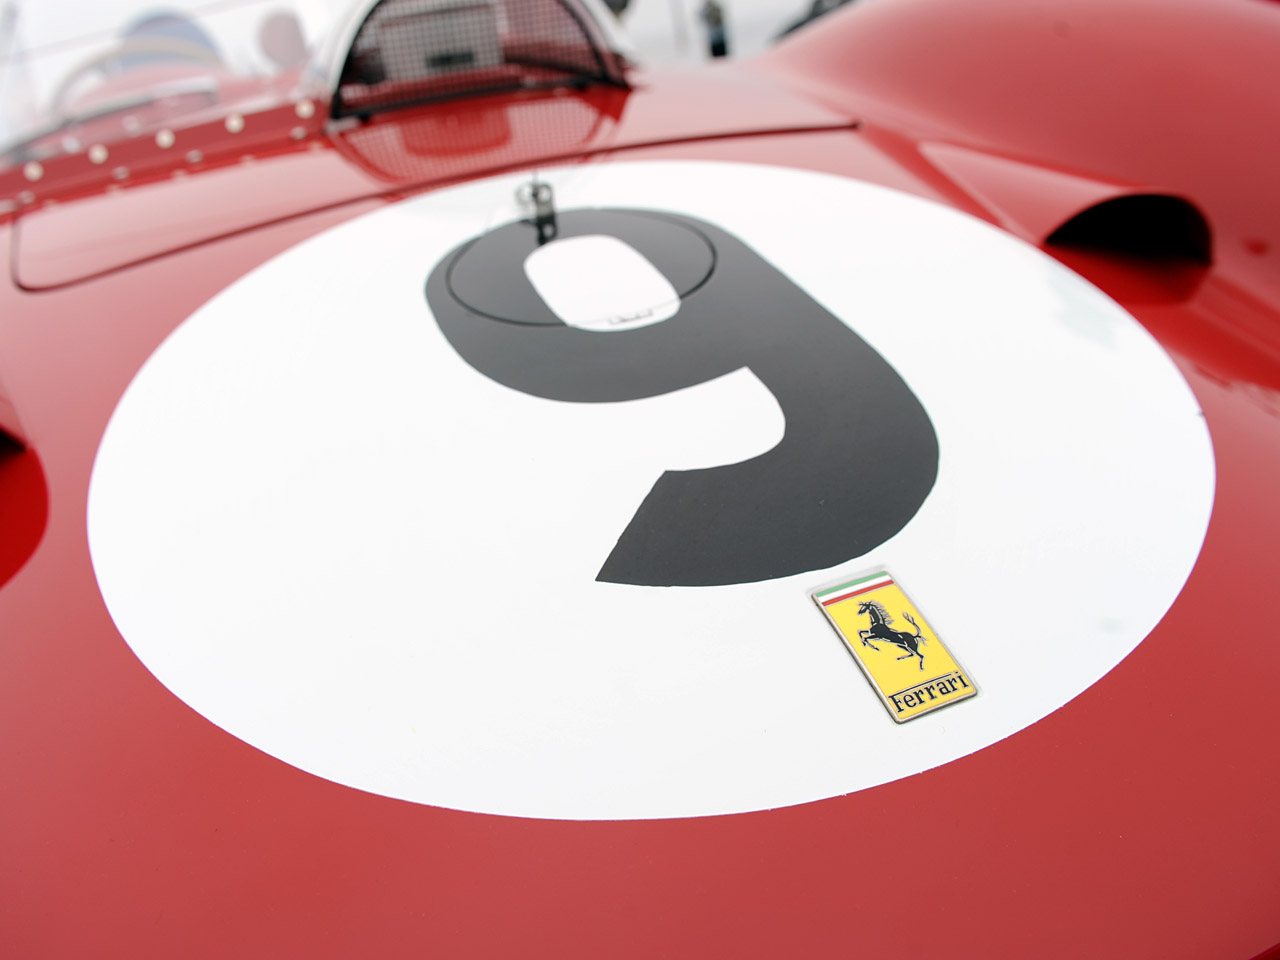 1959 Ferrari TR59